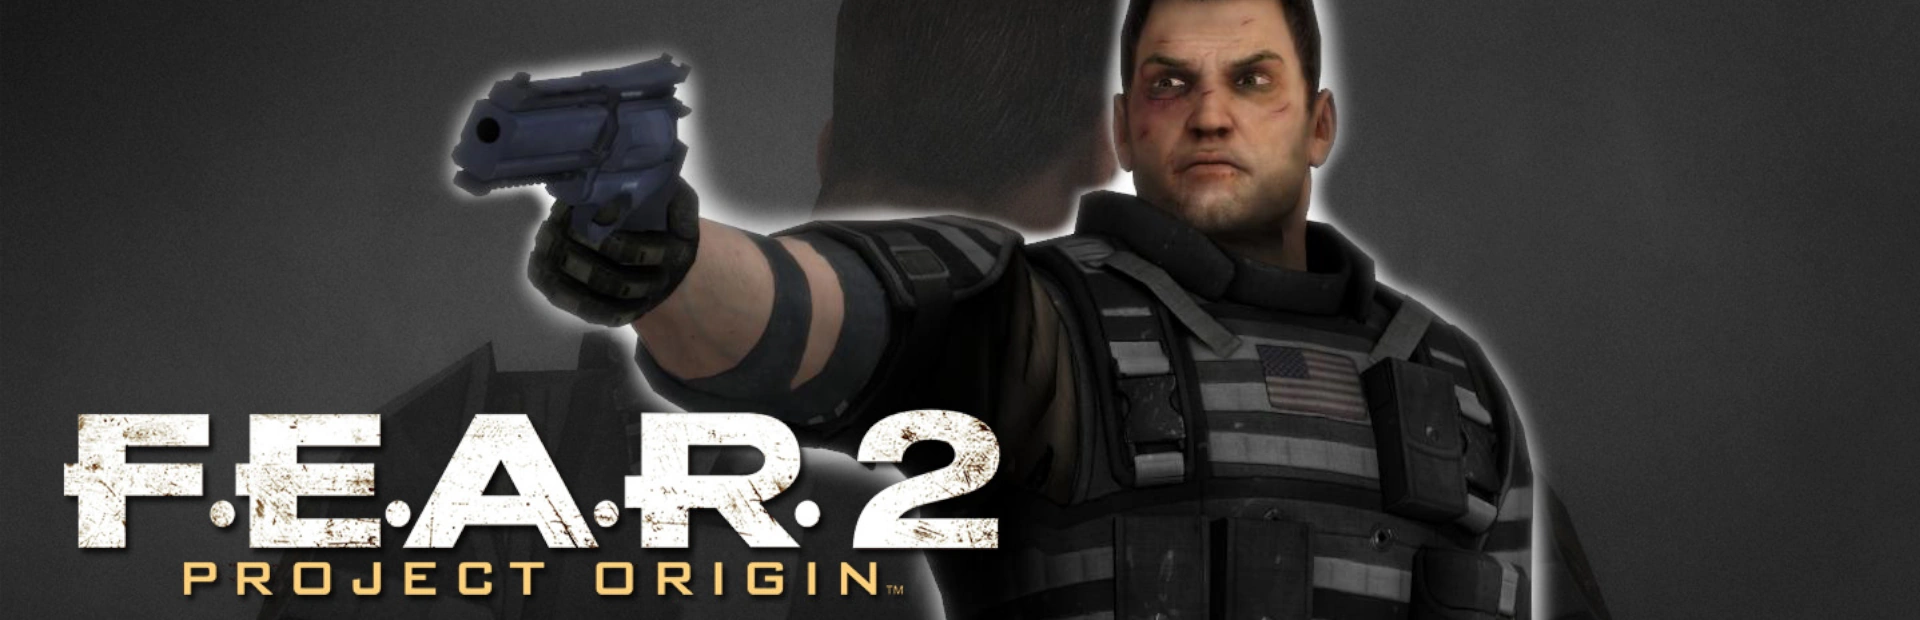 دانلود بازی F.E.A.R. 2: Project Origin برای PC | گیمباتو